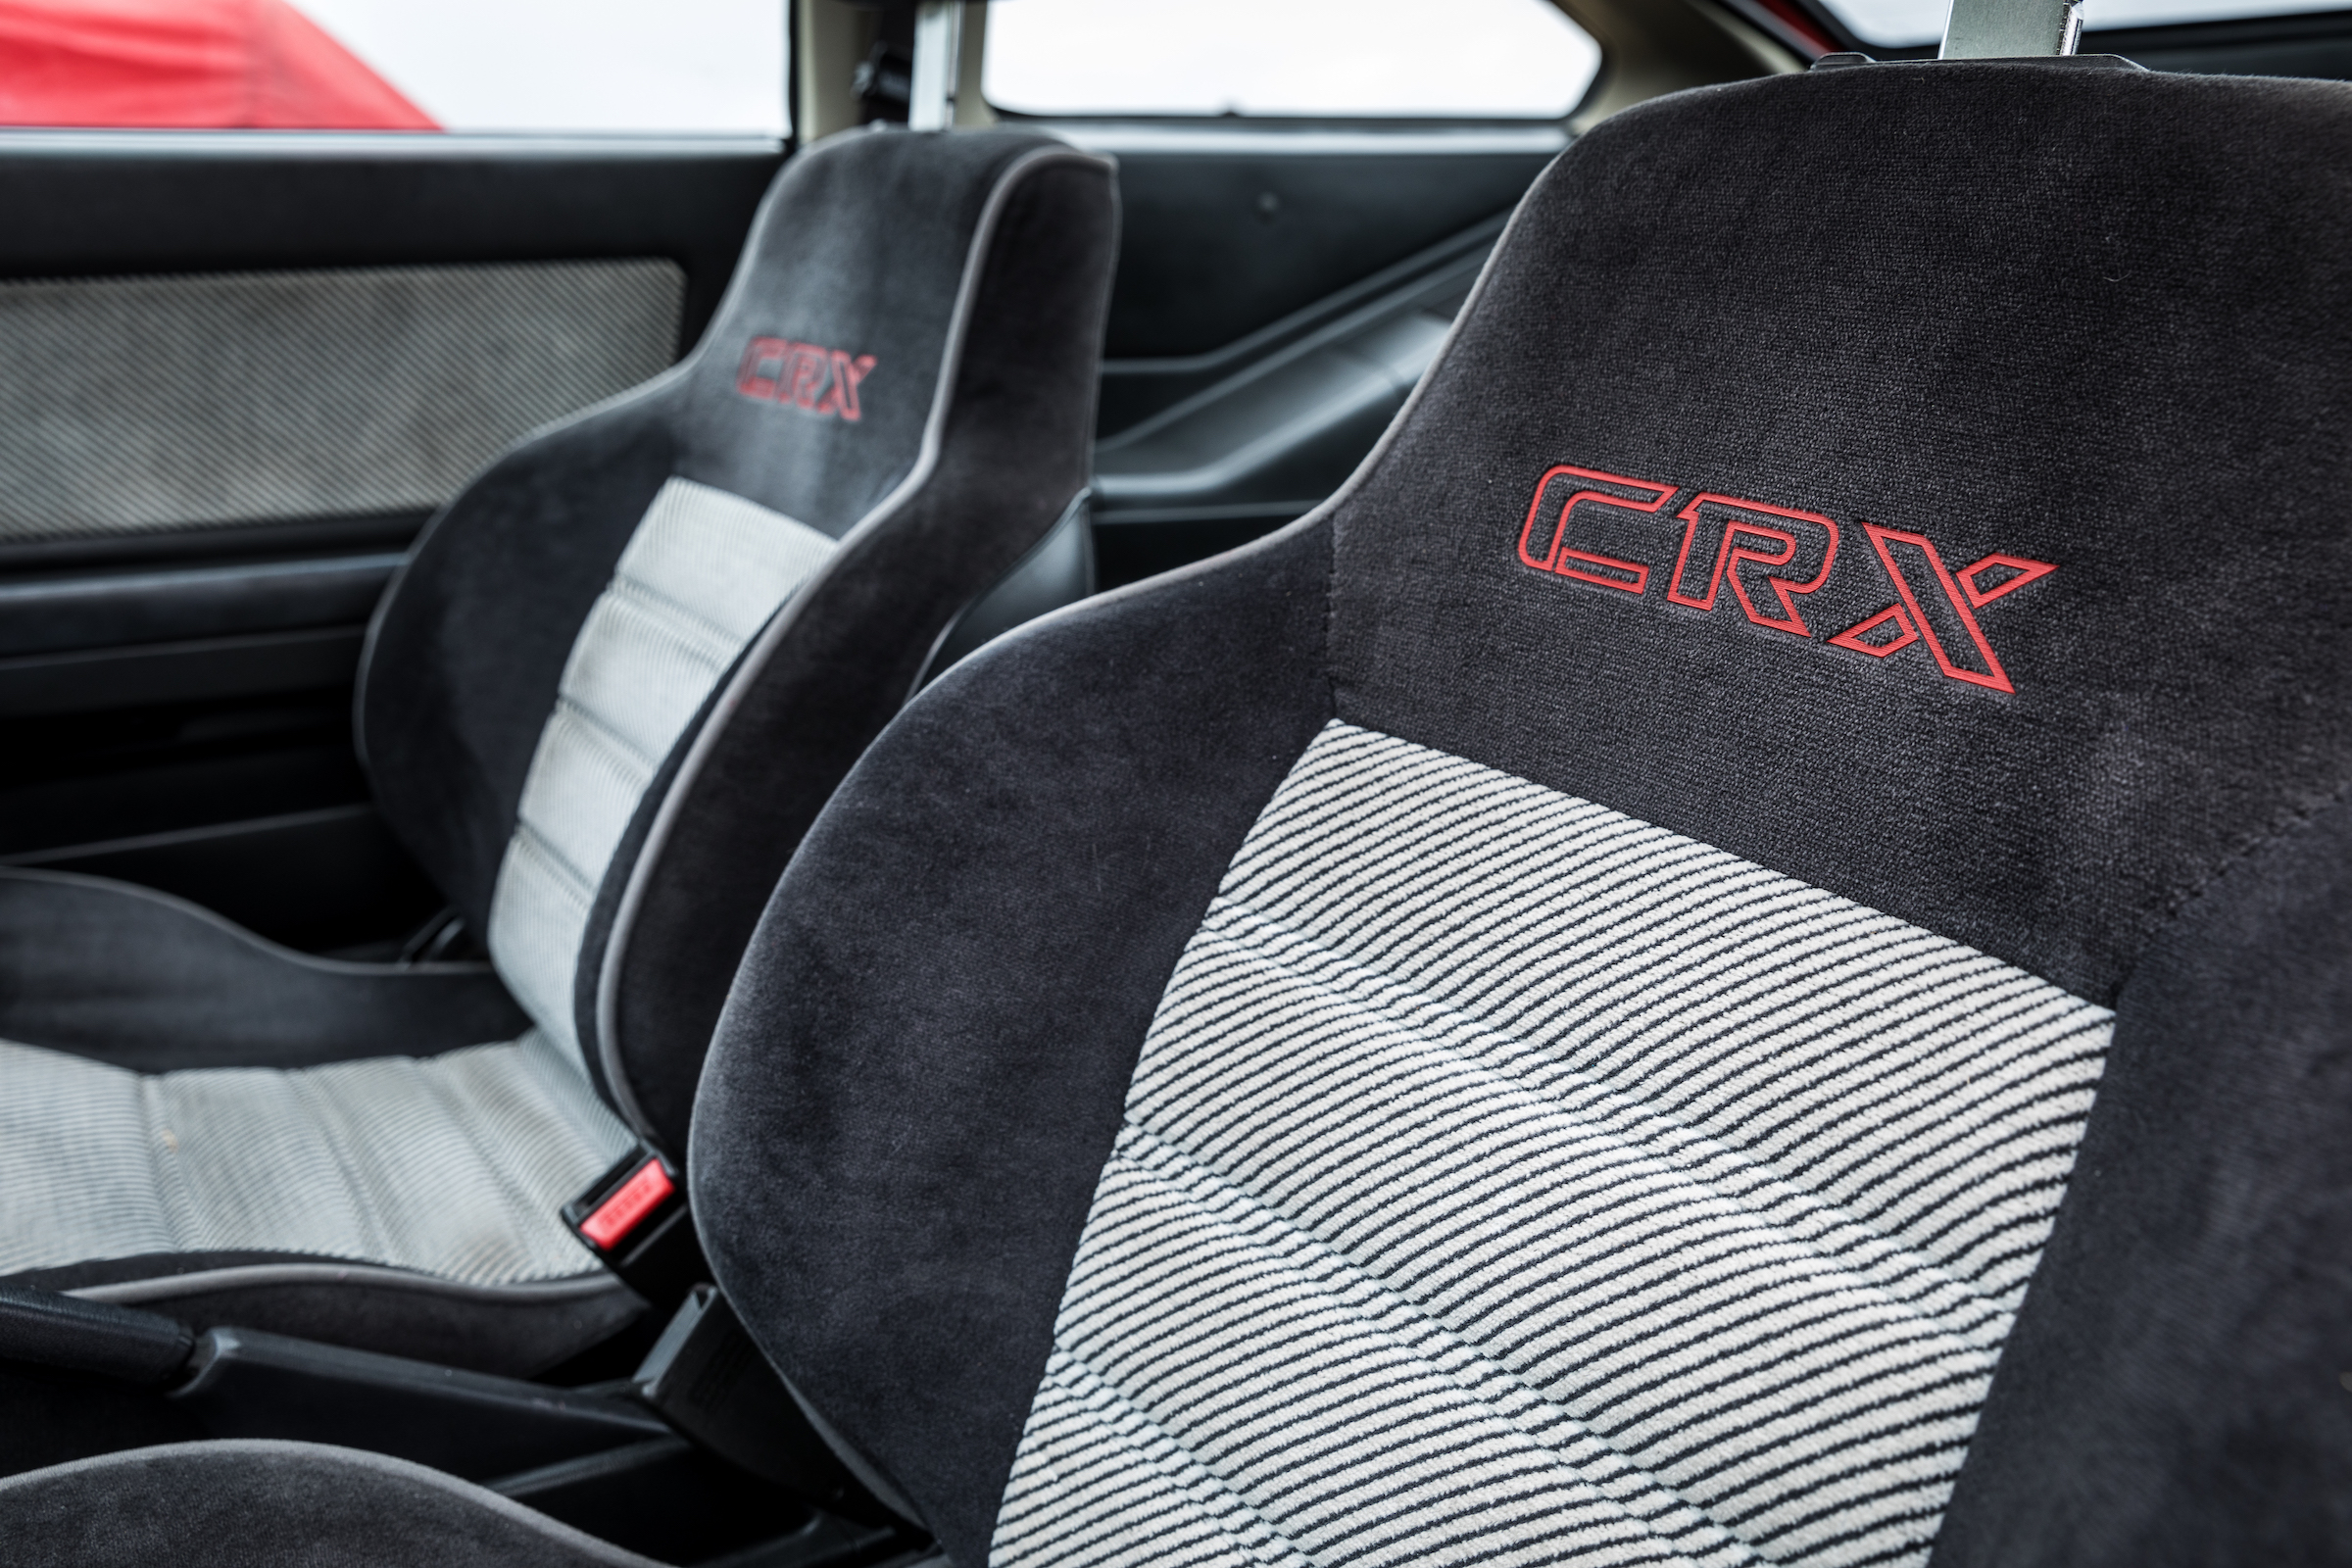 1987 Honda CRX seats